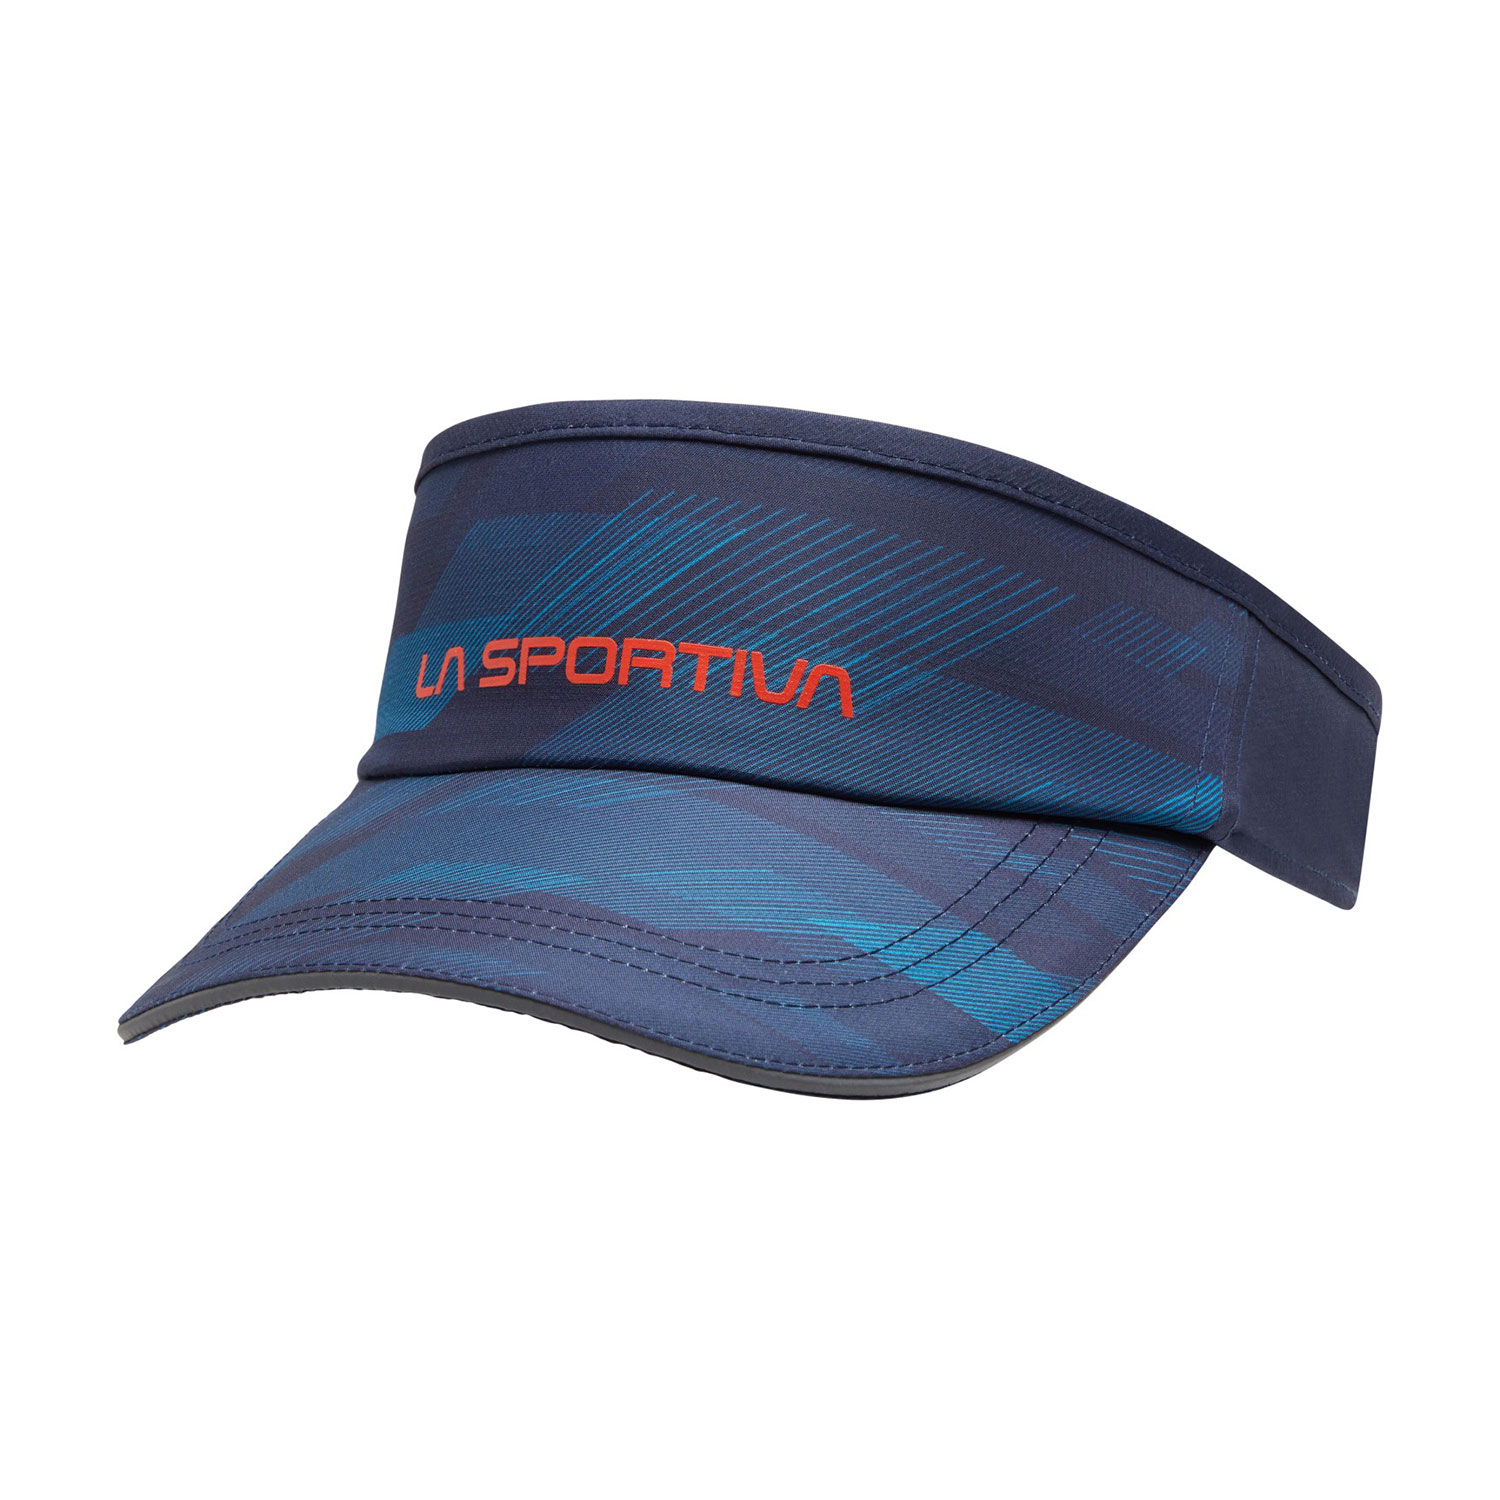 La Sportiva Skyrun Visor - Deep Sea/Tropic Blue